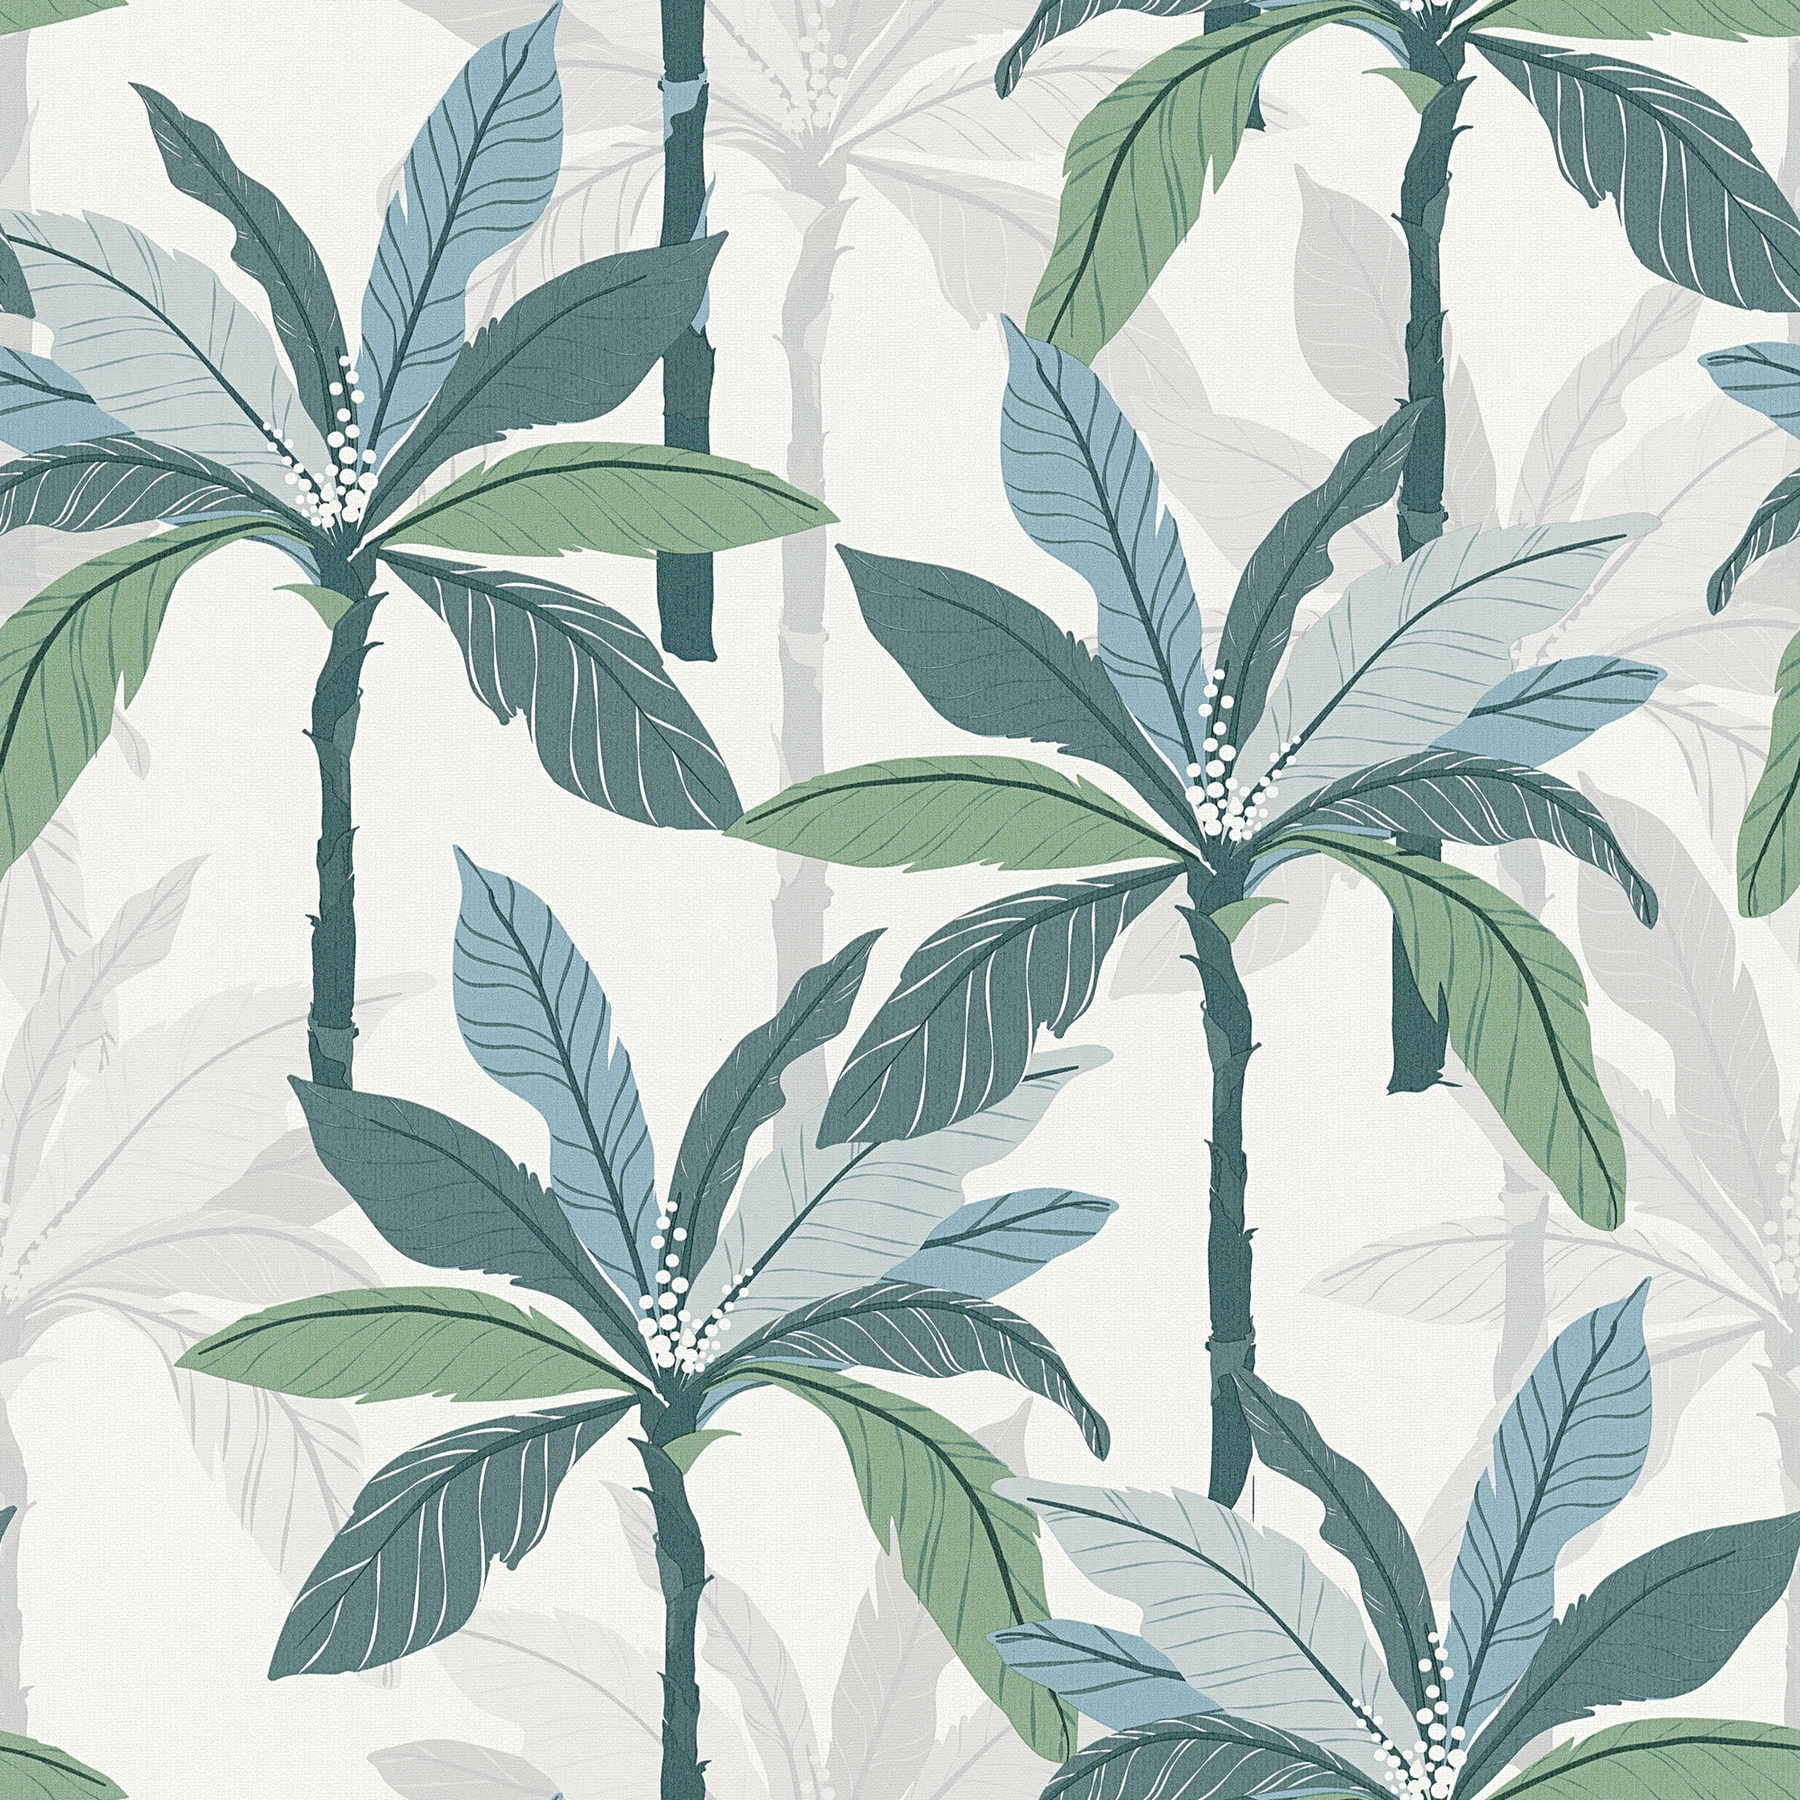 Tropen Tapete mit Palmen-Design - Blau, Grün, Weiß
